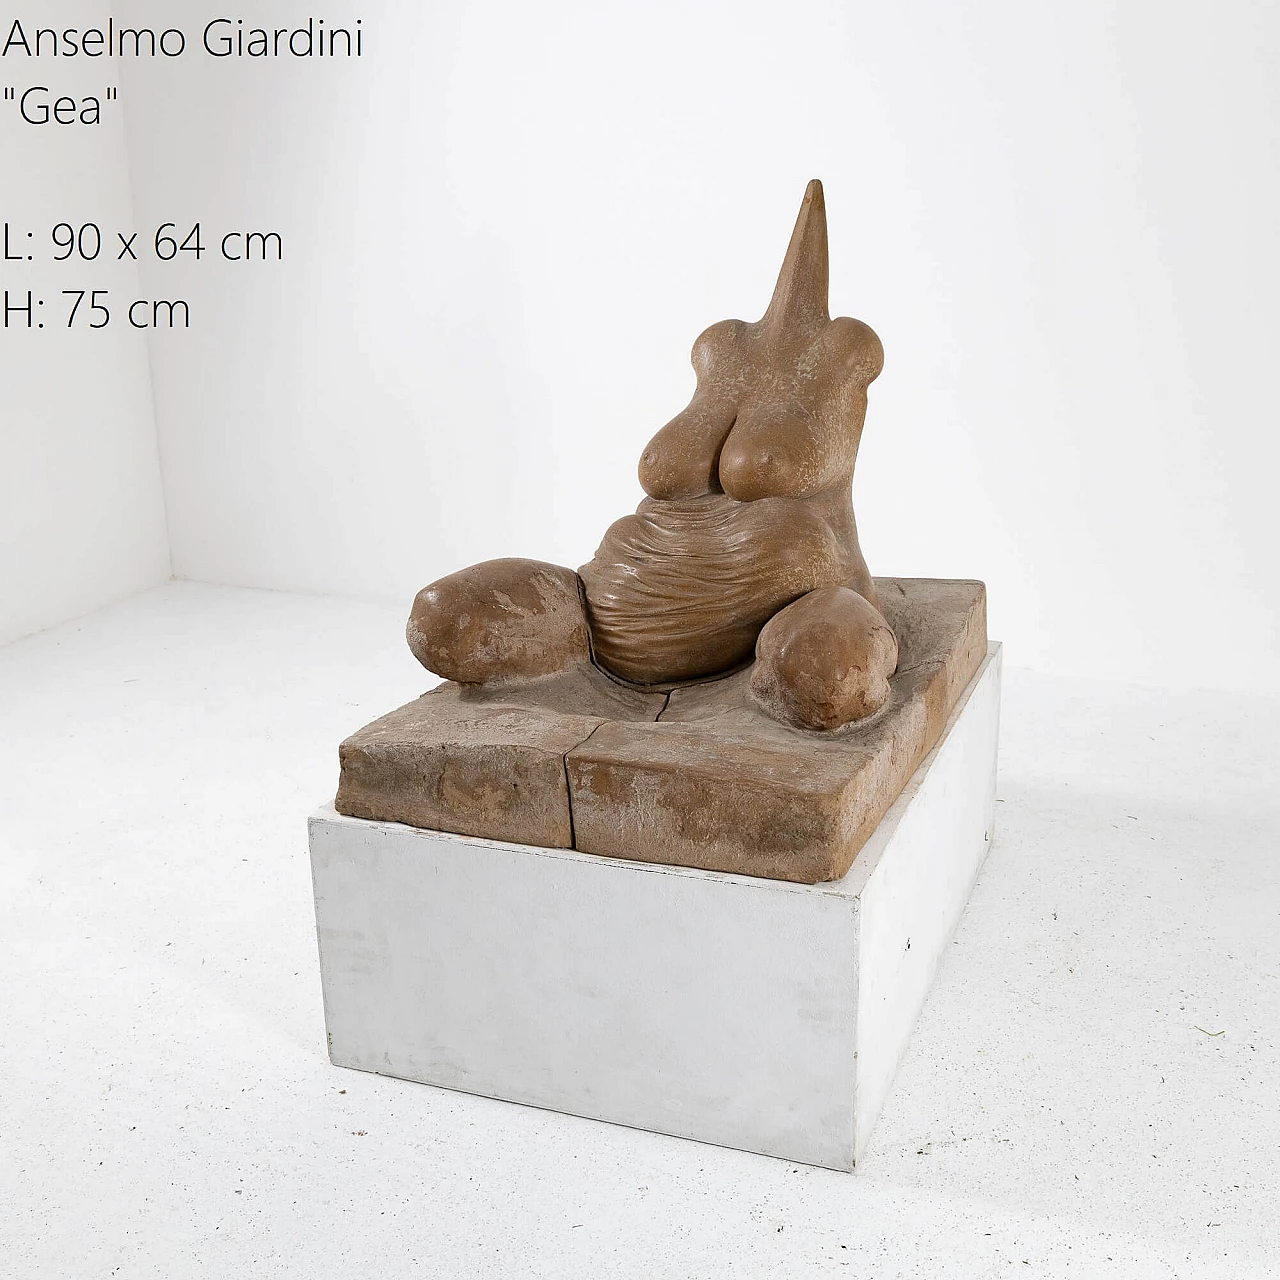 Anselmo Giardini, Gea, scultura in terracotta, 1978 3